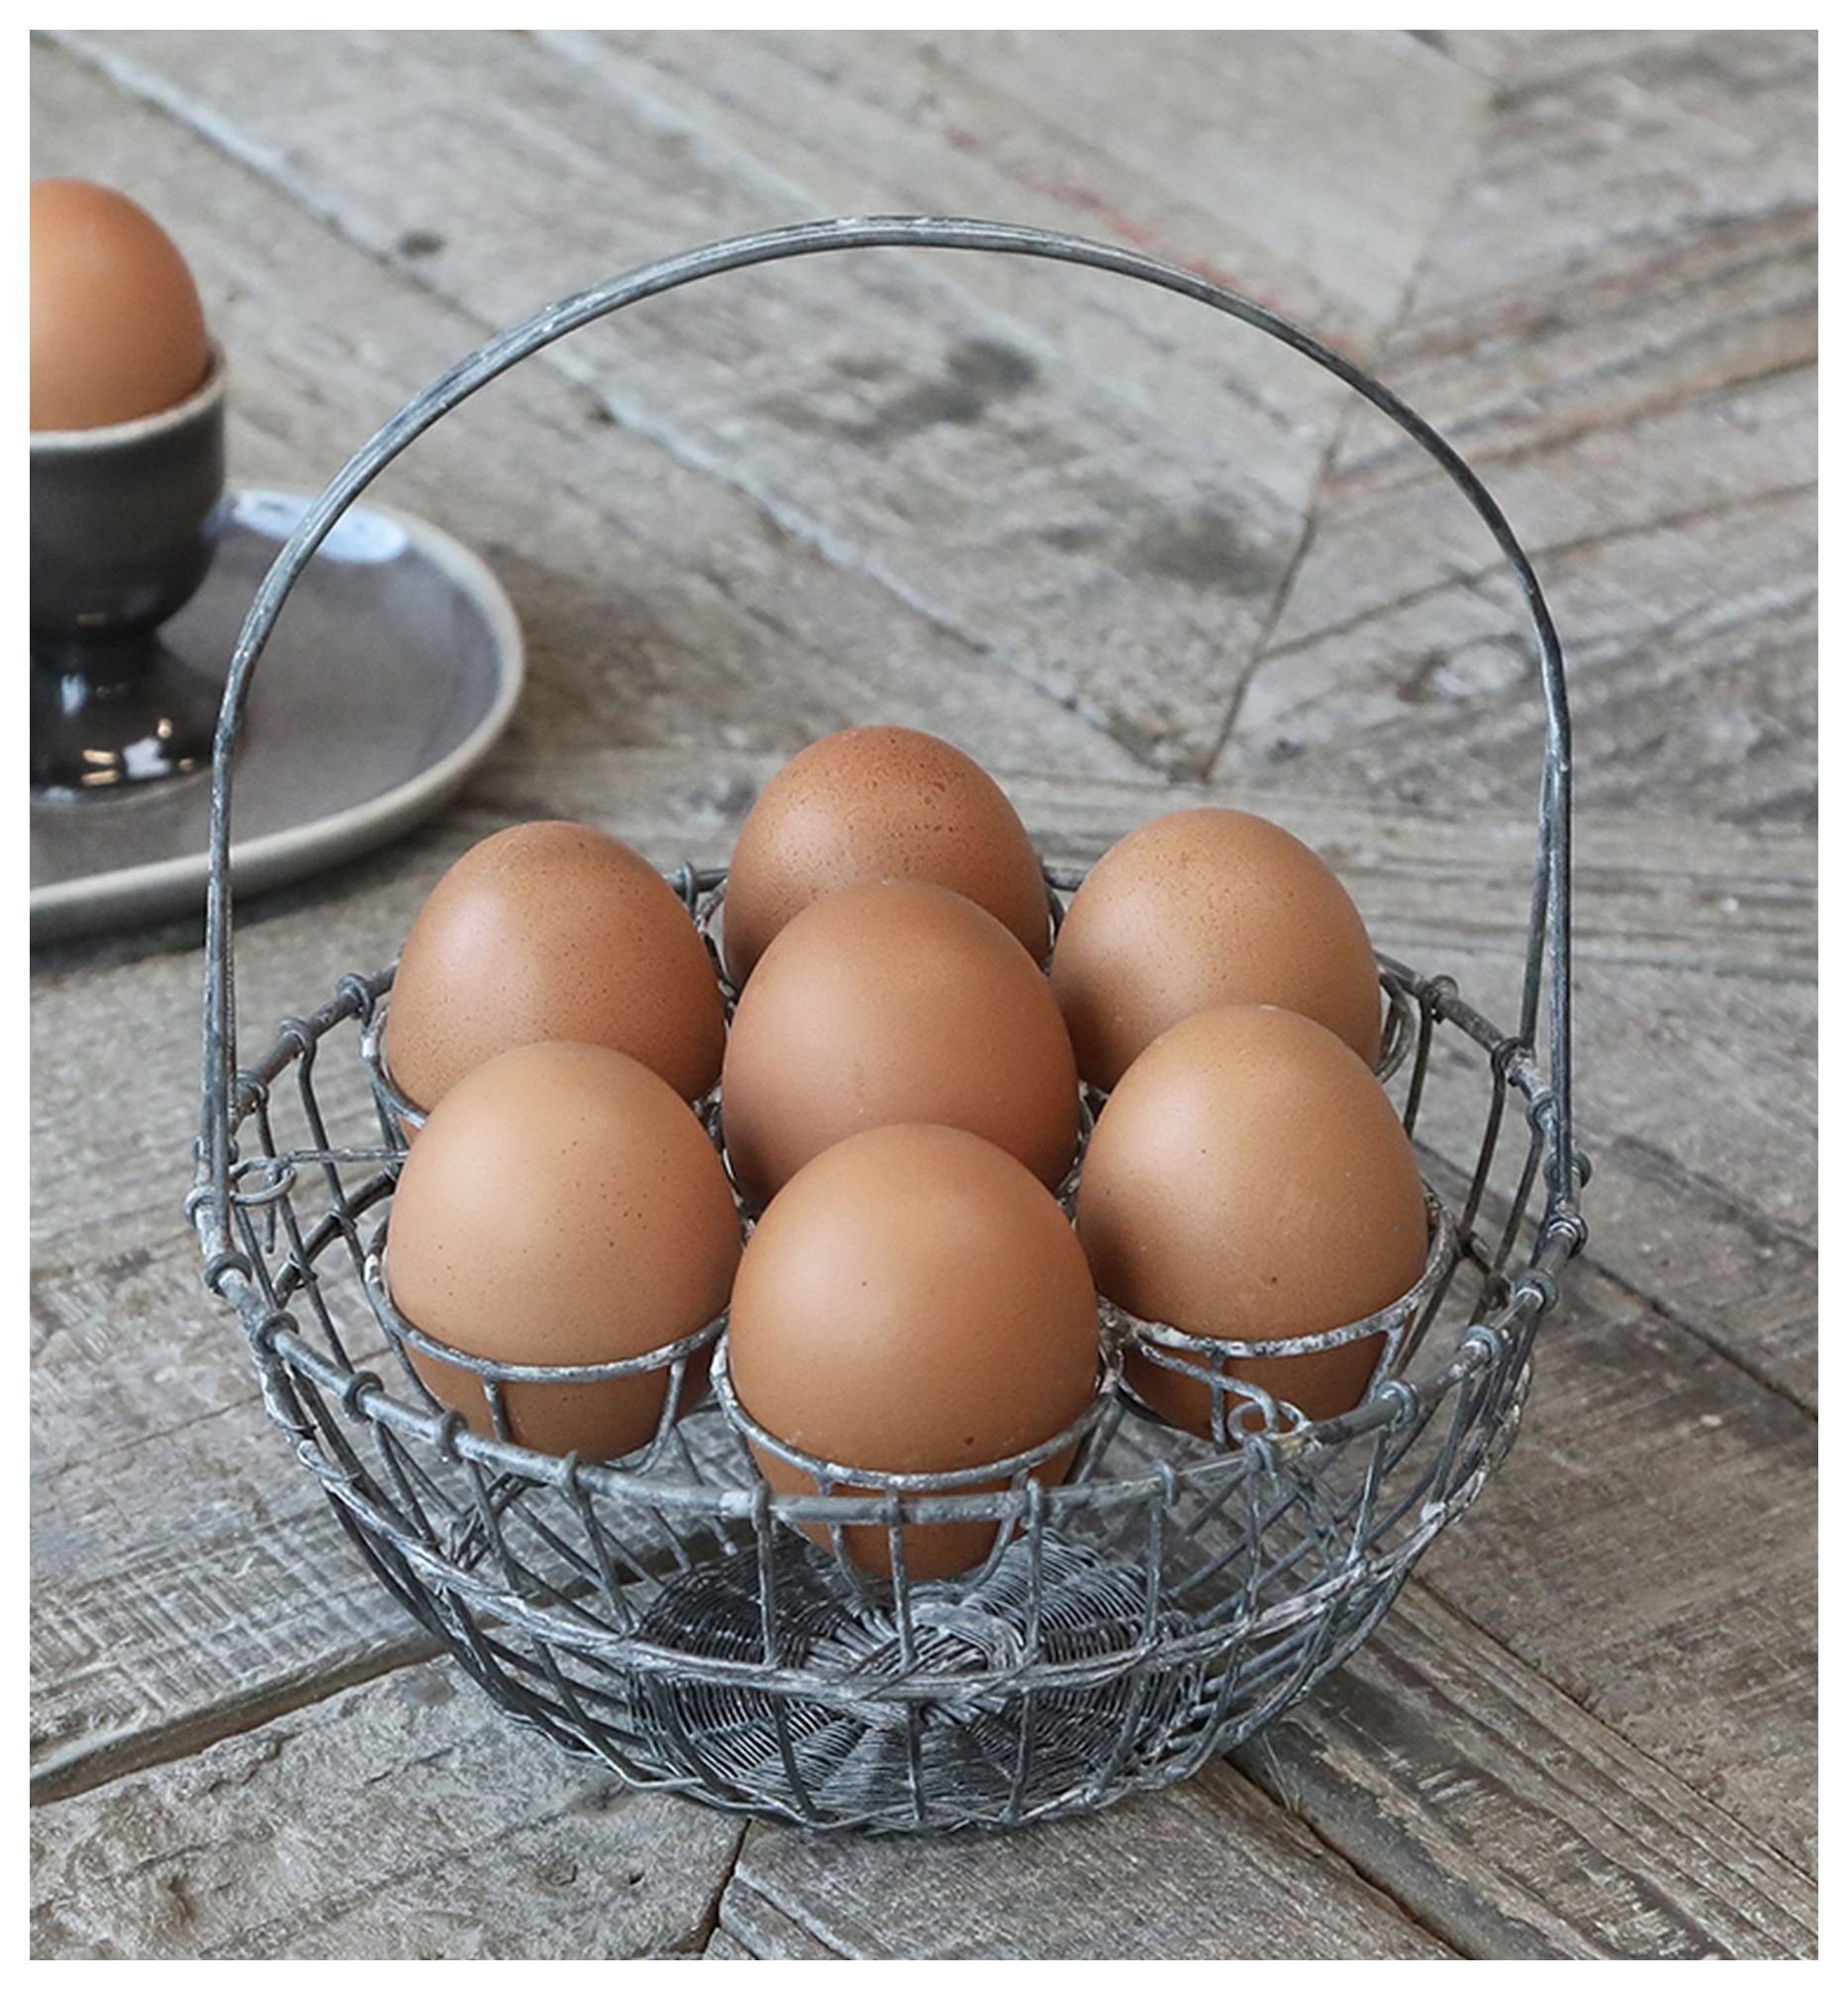 Chic Antique Eierkorb Chic Antique - Eierkorb für 7 Eier Korb Metall (61548-00) | Eierkörbe